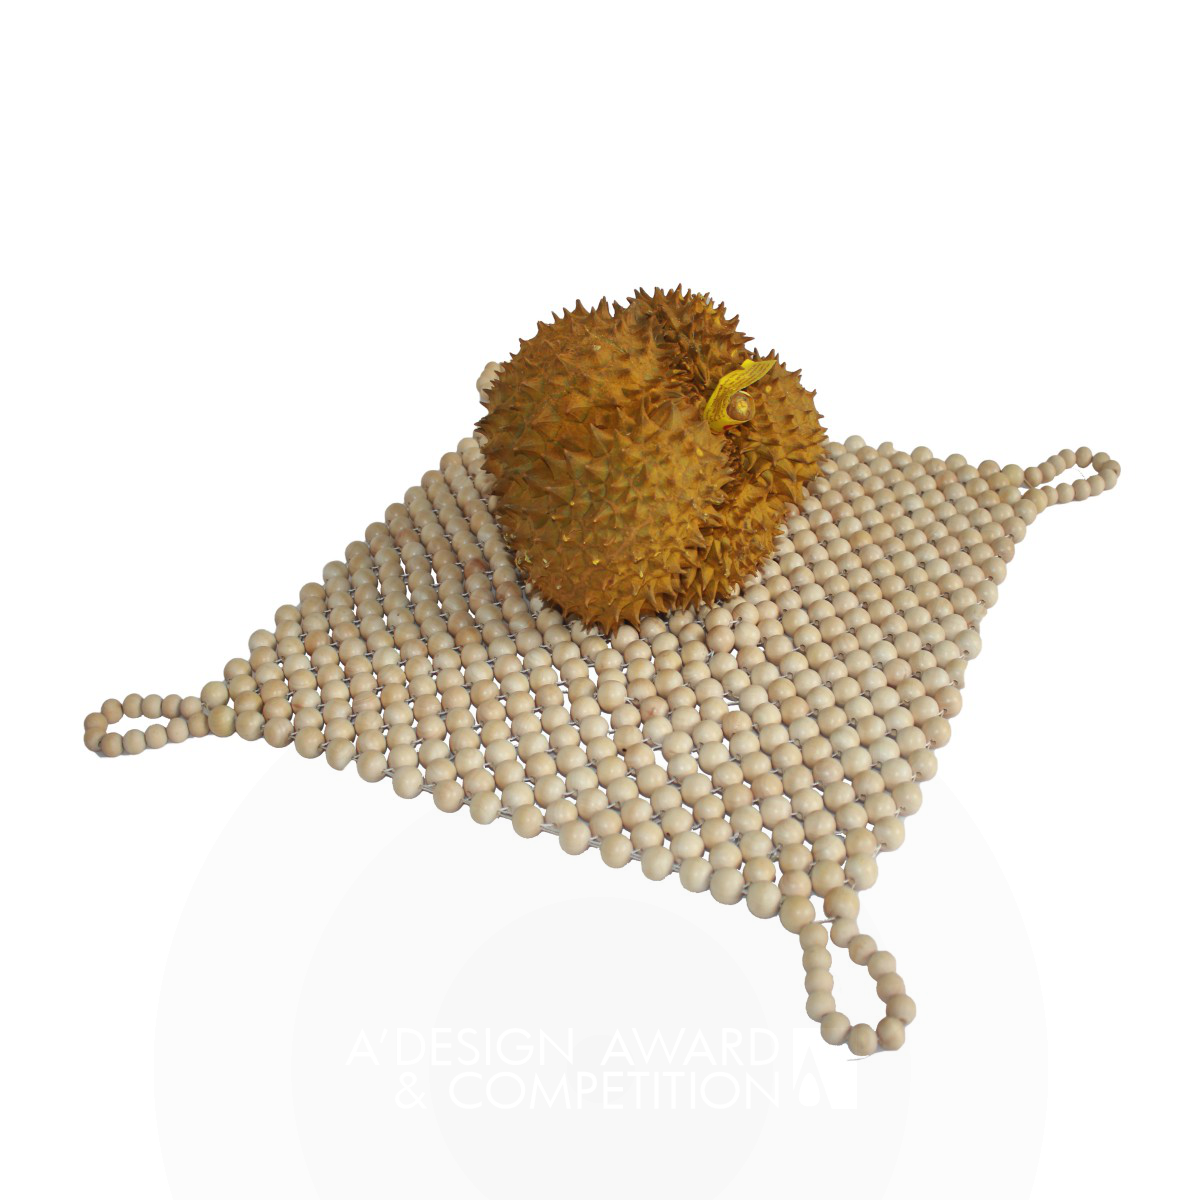 Safe Durian Net Bag by Qiu Liwei